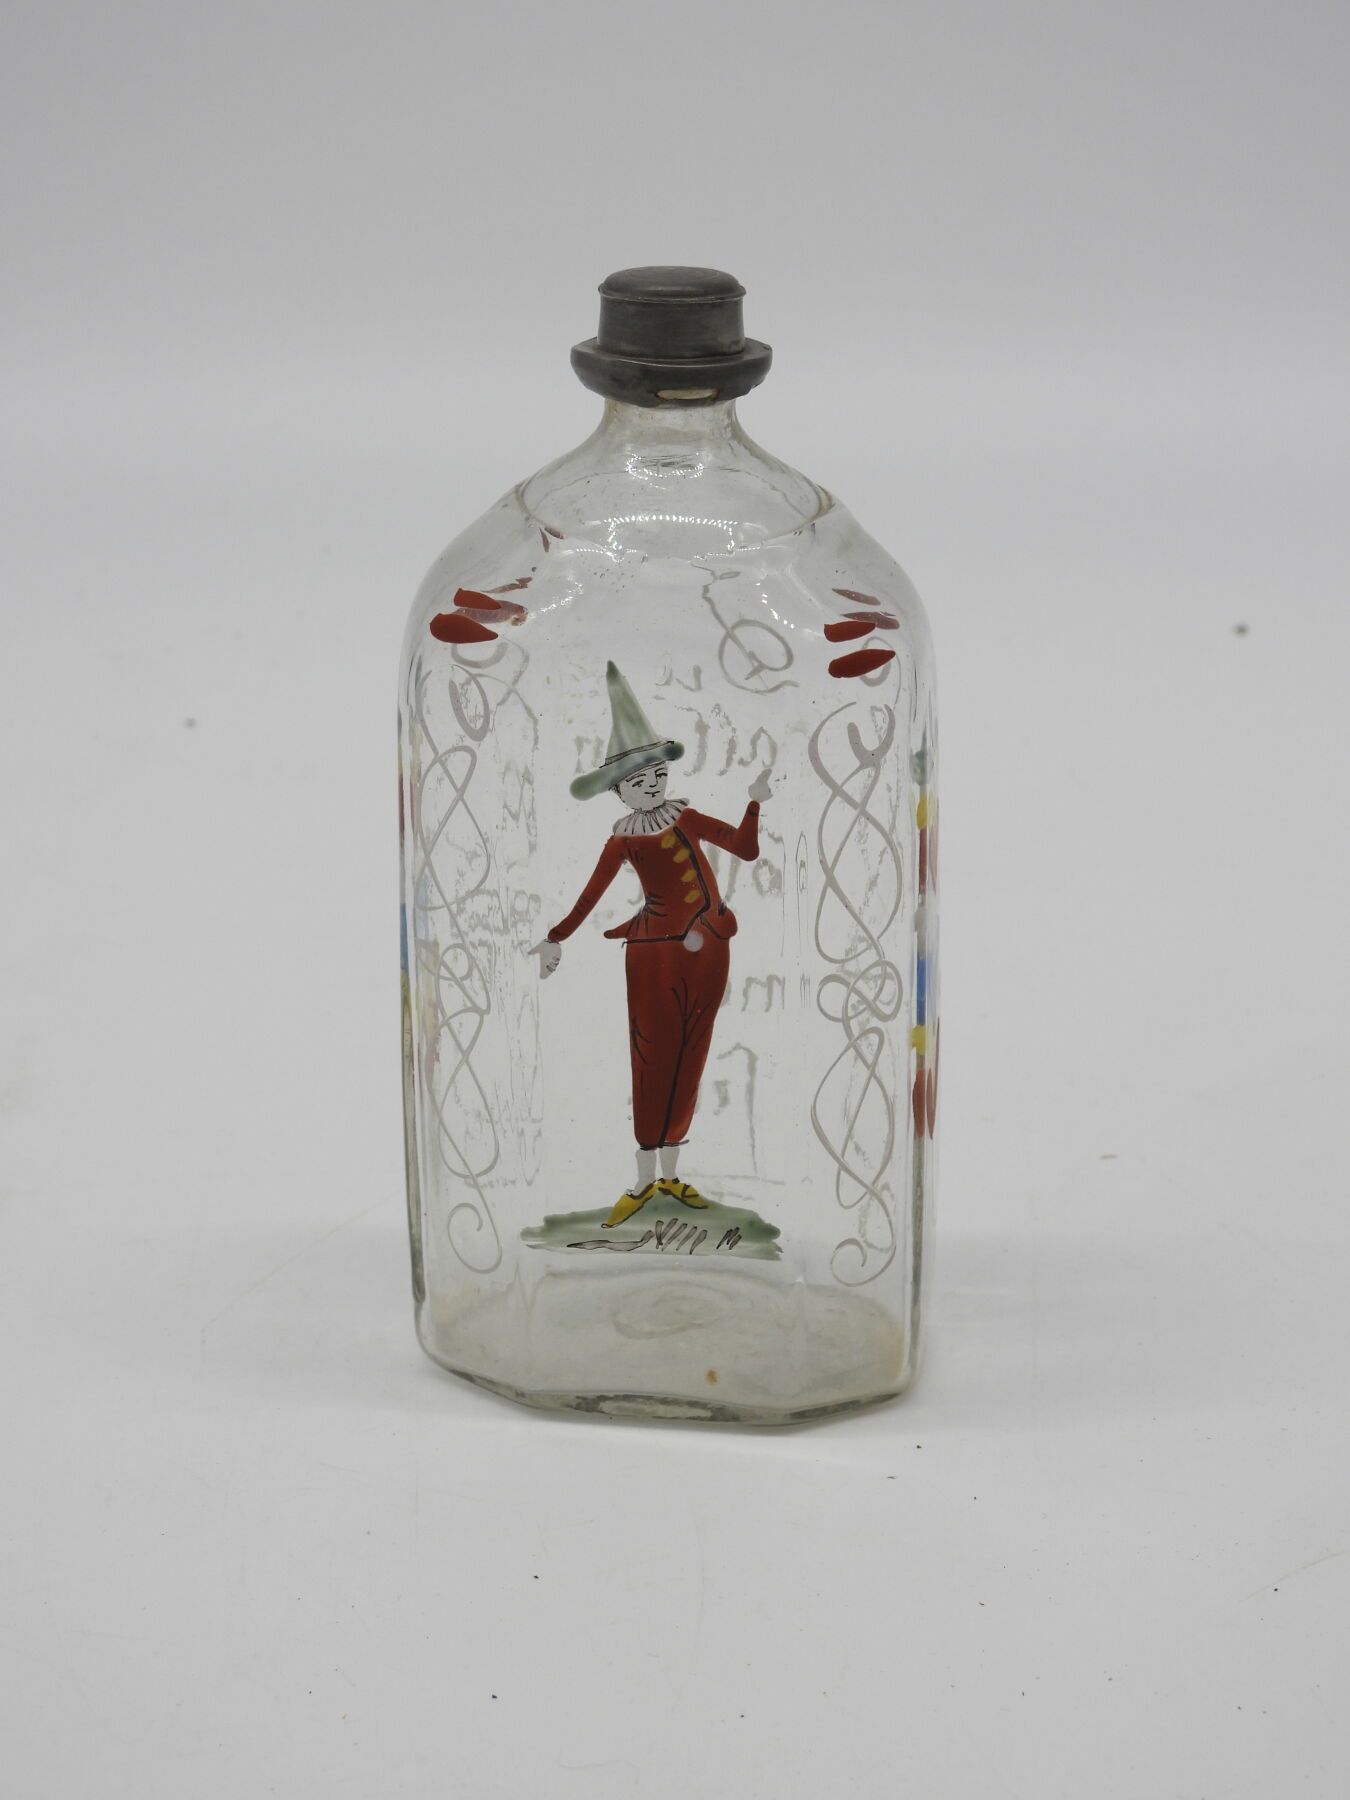 Null 德国 (?): 珐琅彩玻璃瓶，装饰着一个小丑，上面刻着 "Du allein forlit mein fein"。锡制瓶塞。17厘米